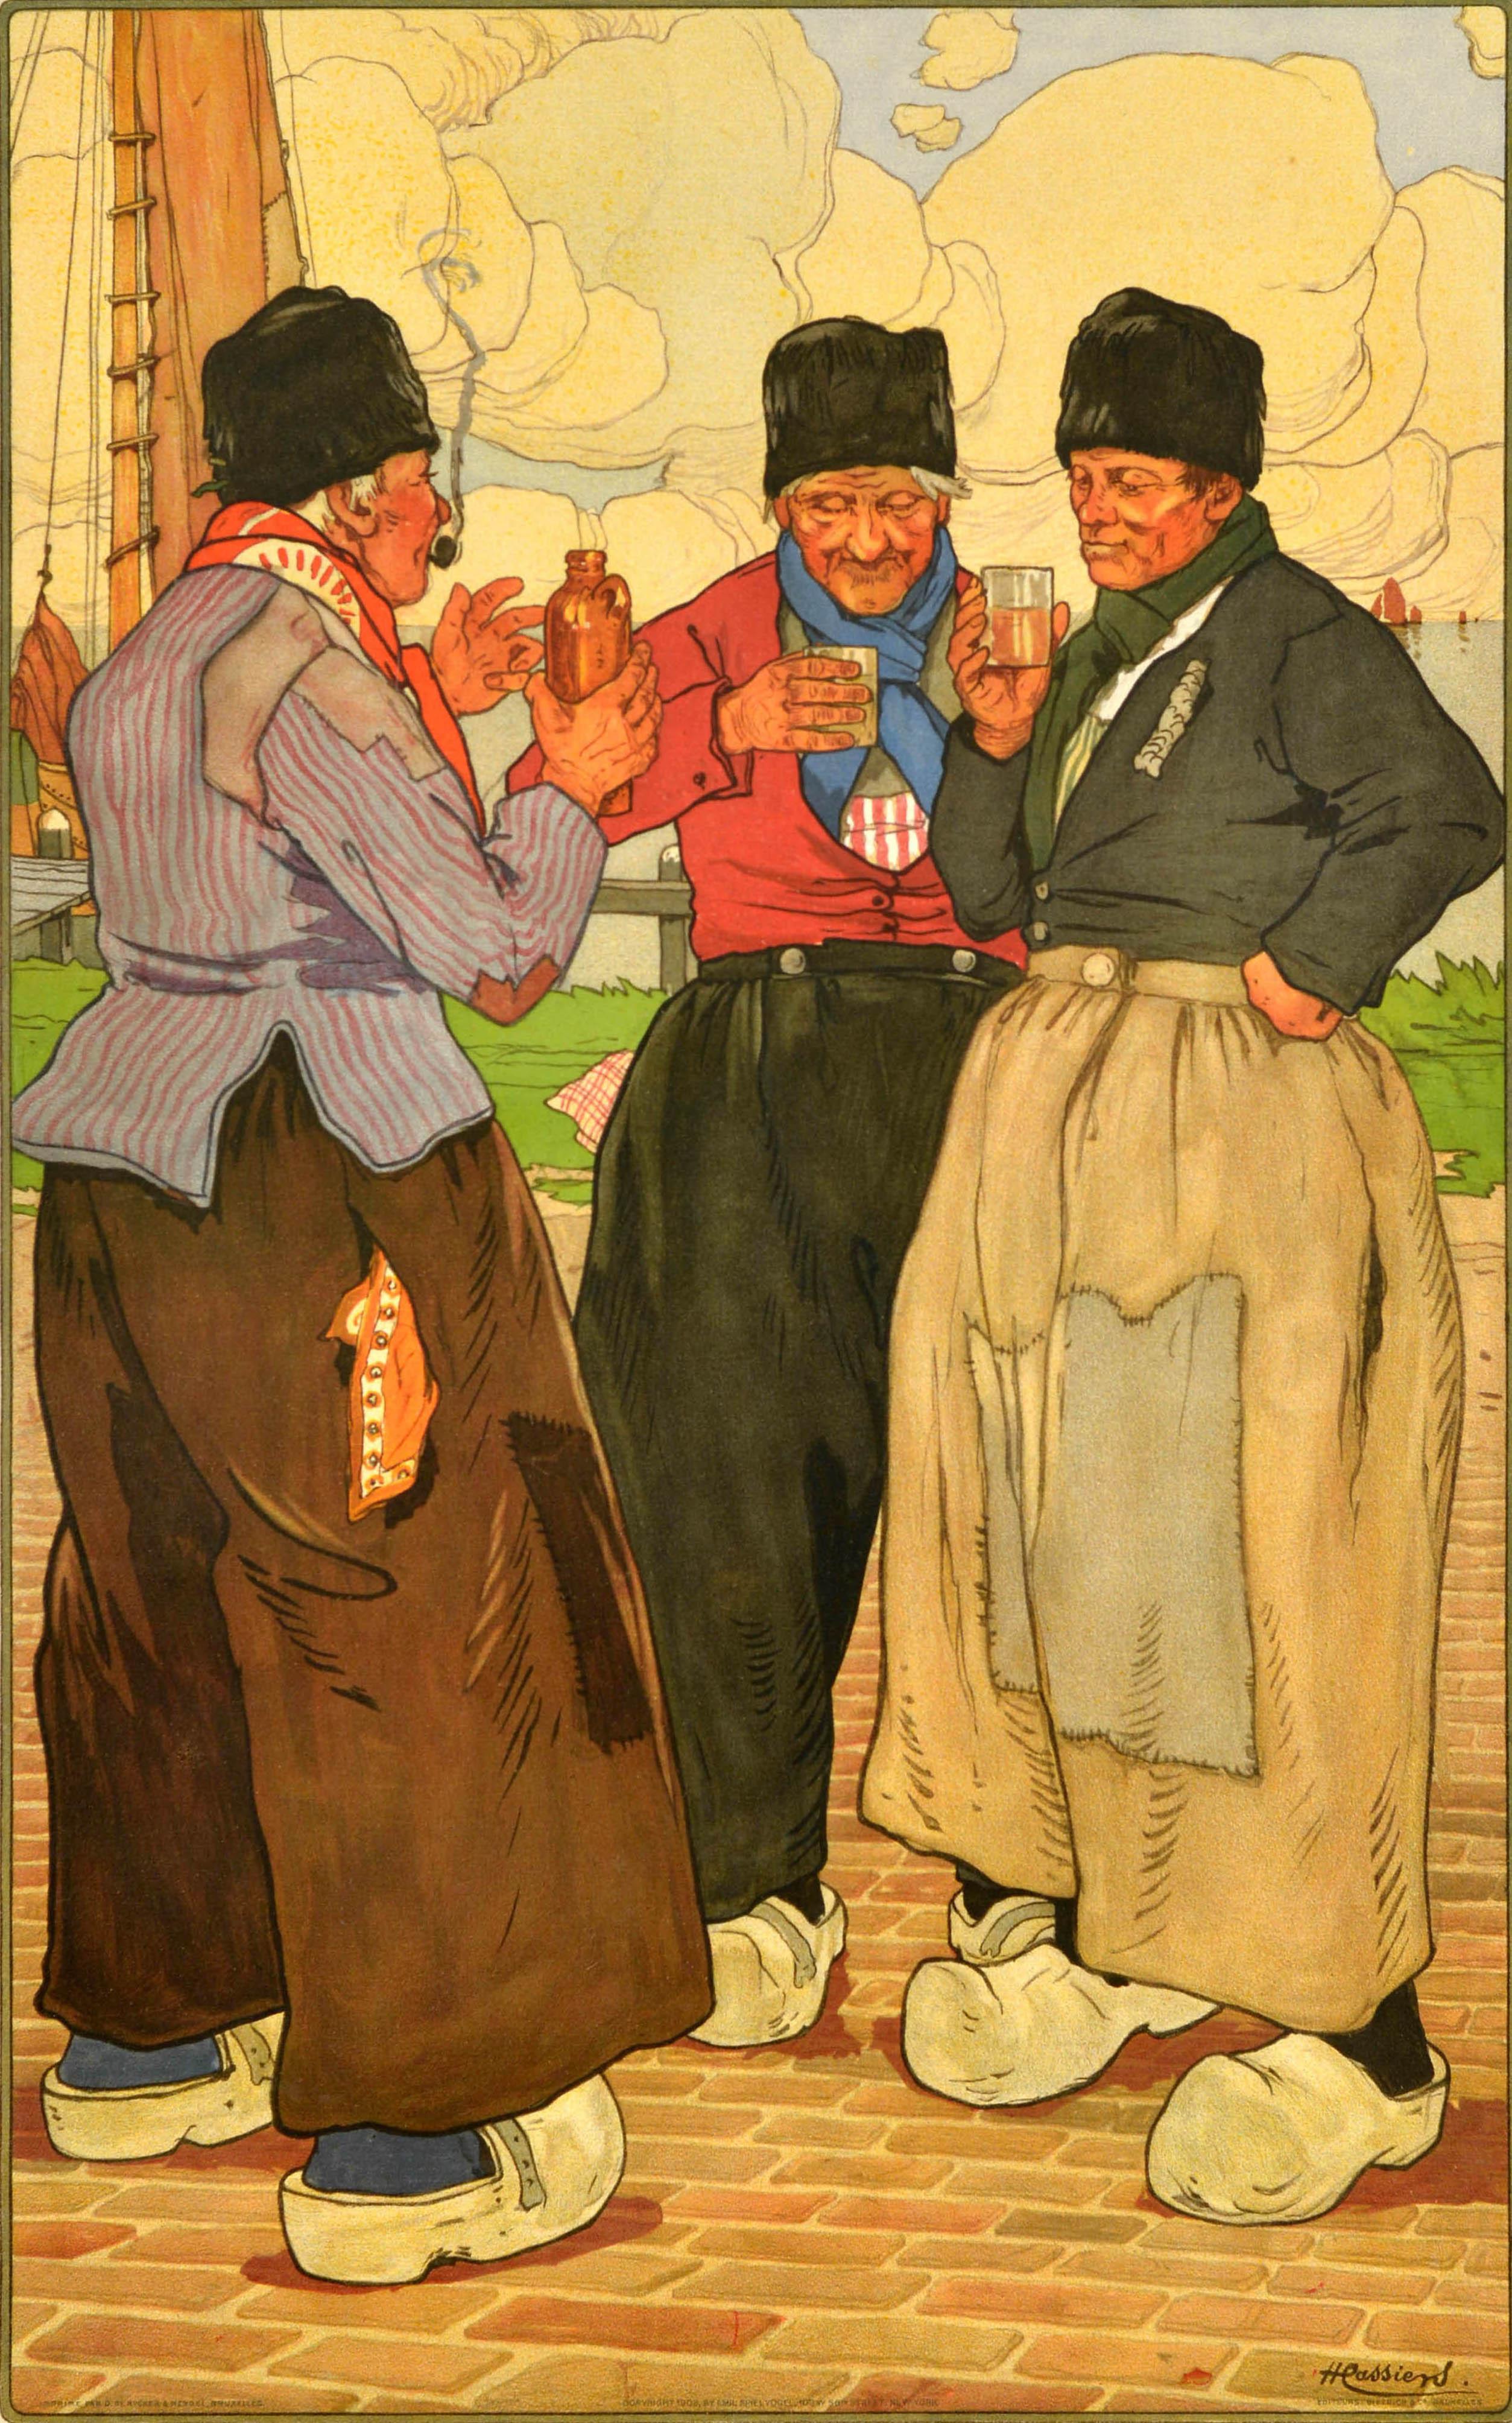 Cartel antiguo original de viajes a Bélgica con una ilustración de Henri Cassiers (1858-1944) que representa a tres pescadores de pie juntos con zapatos tradicionales de zueco disfrutando de una bebida sobre adoquines, uno fumando en pipa y